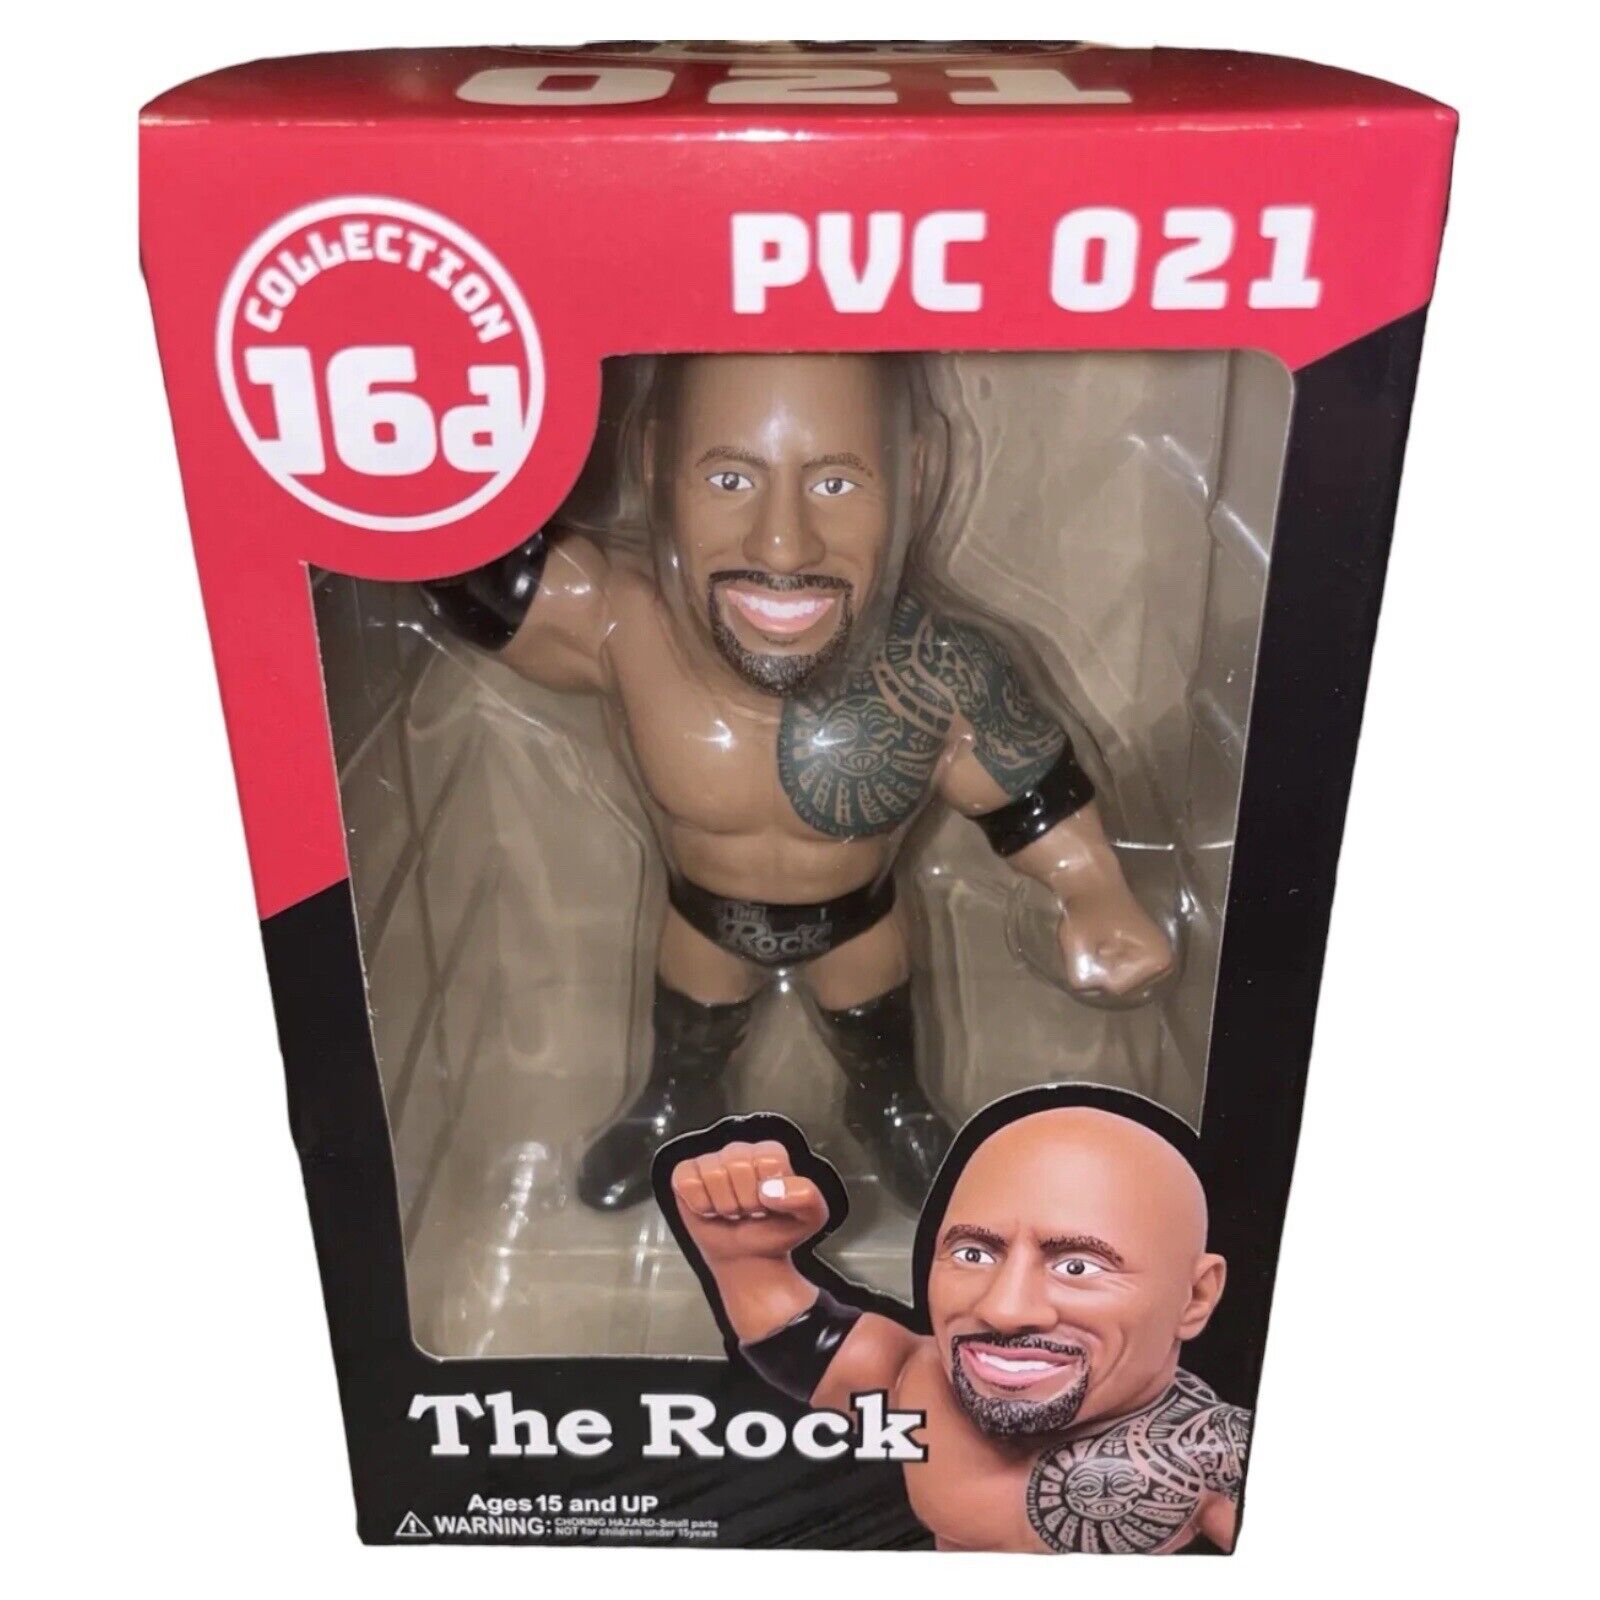 Dewayne Johnson The Rock WWE Series PVC 021 16D Collection 5” Vinyl Figure 